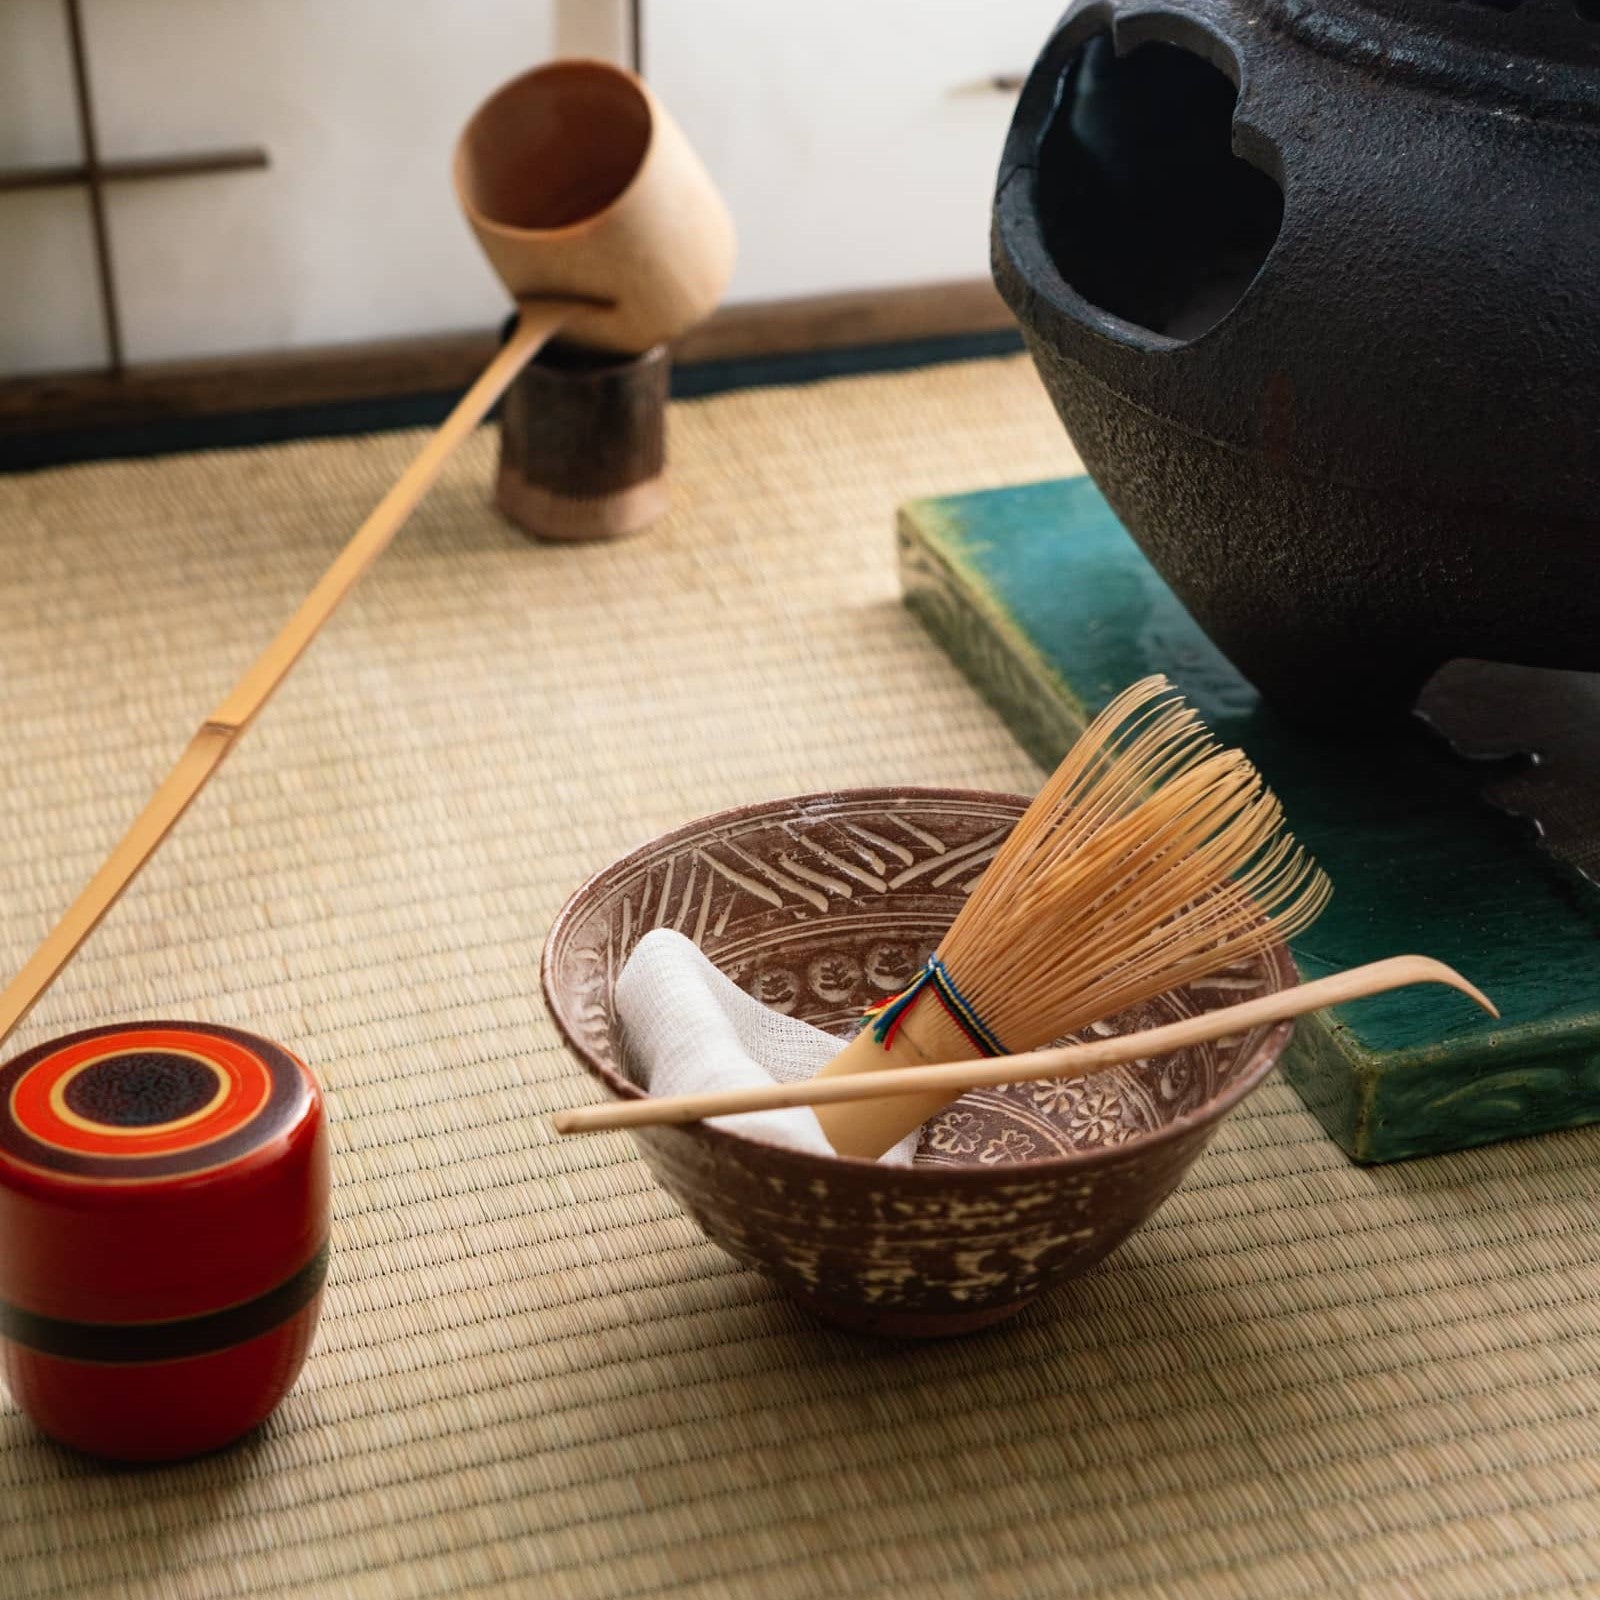 MATCHAMAKA Matcha Whisk Tea Set - Japanese Matcha Whisk (Chasen